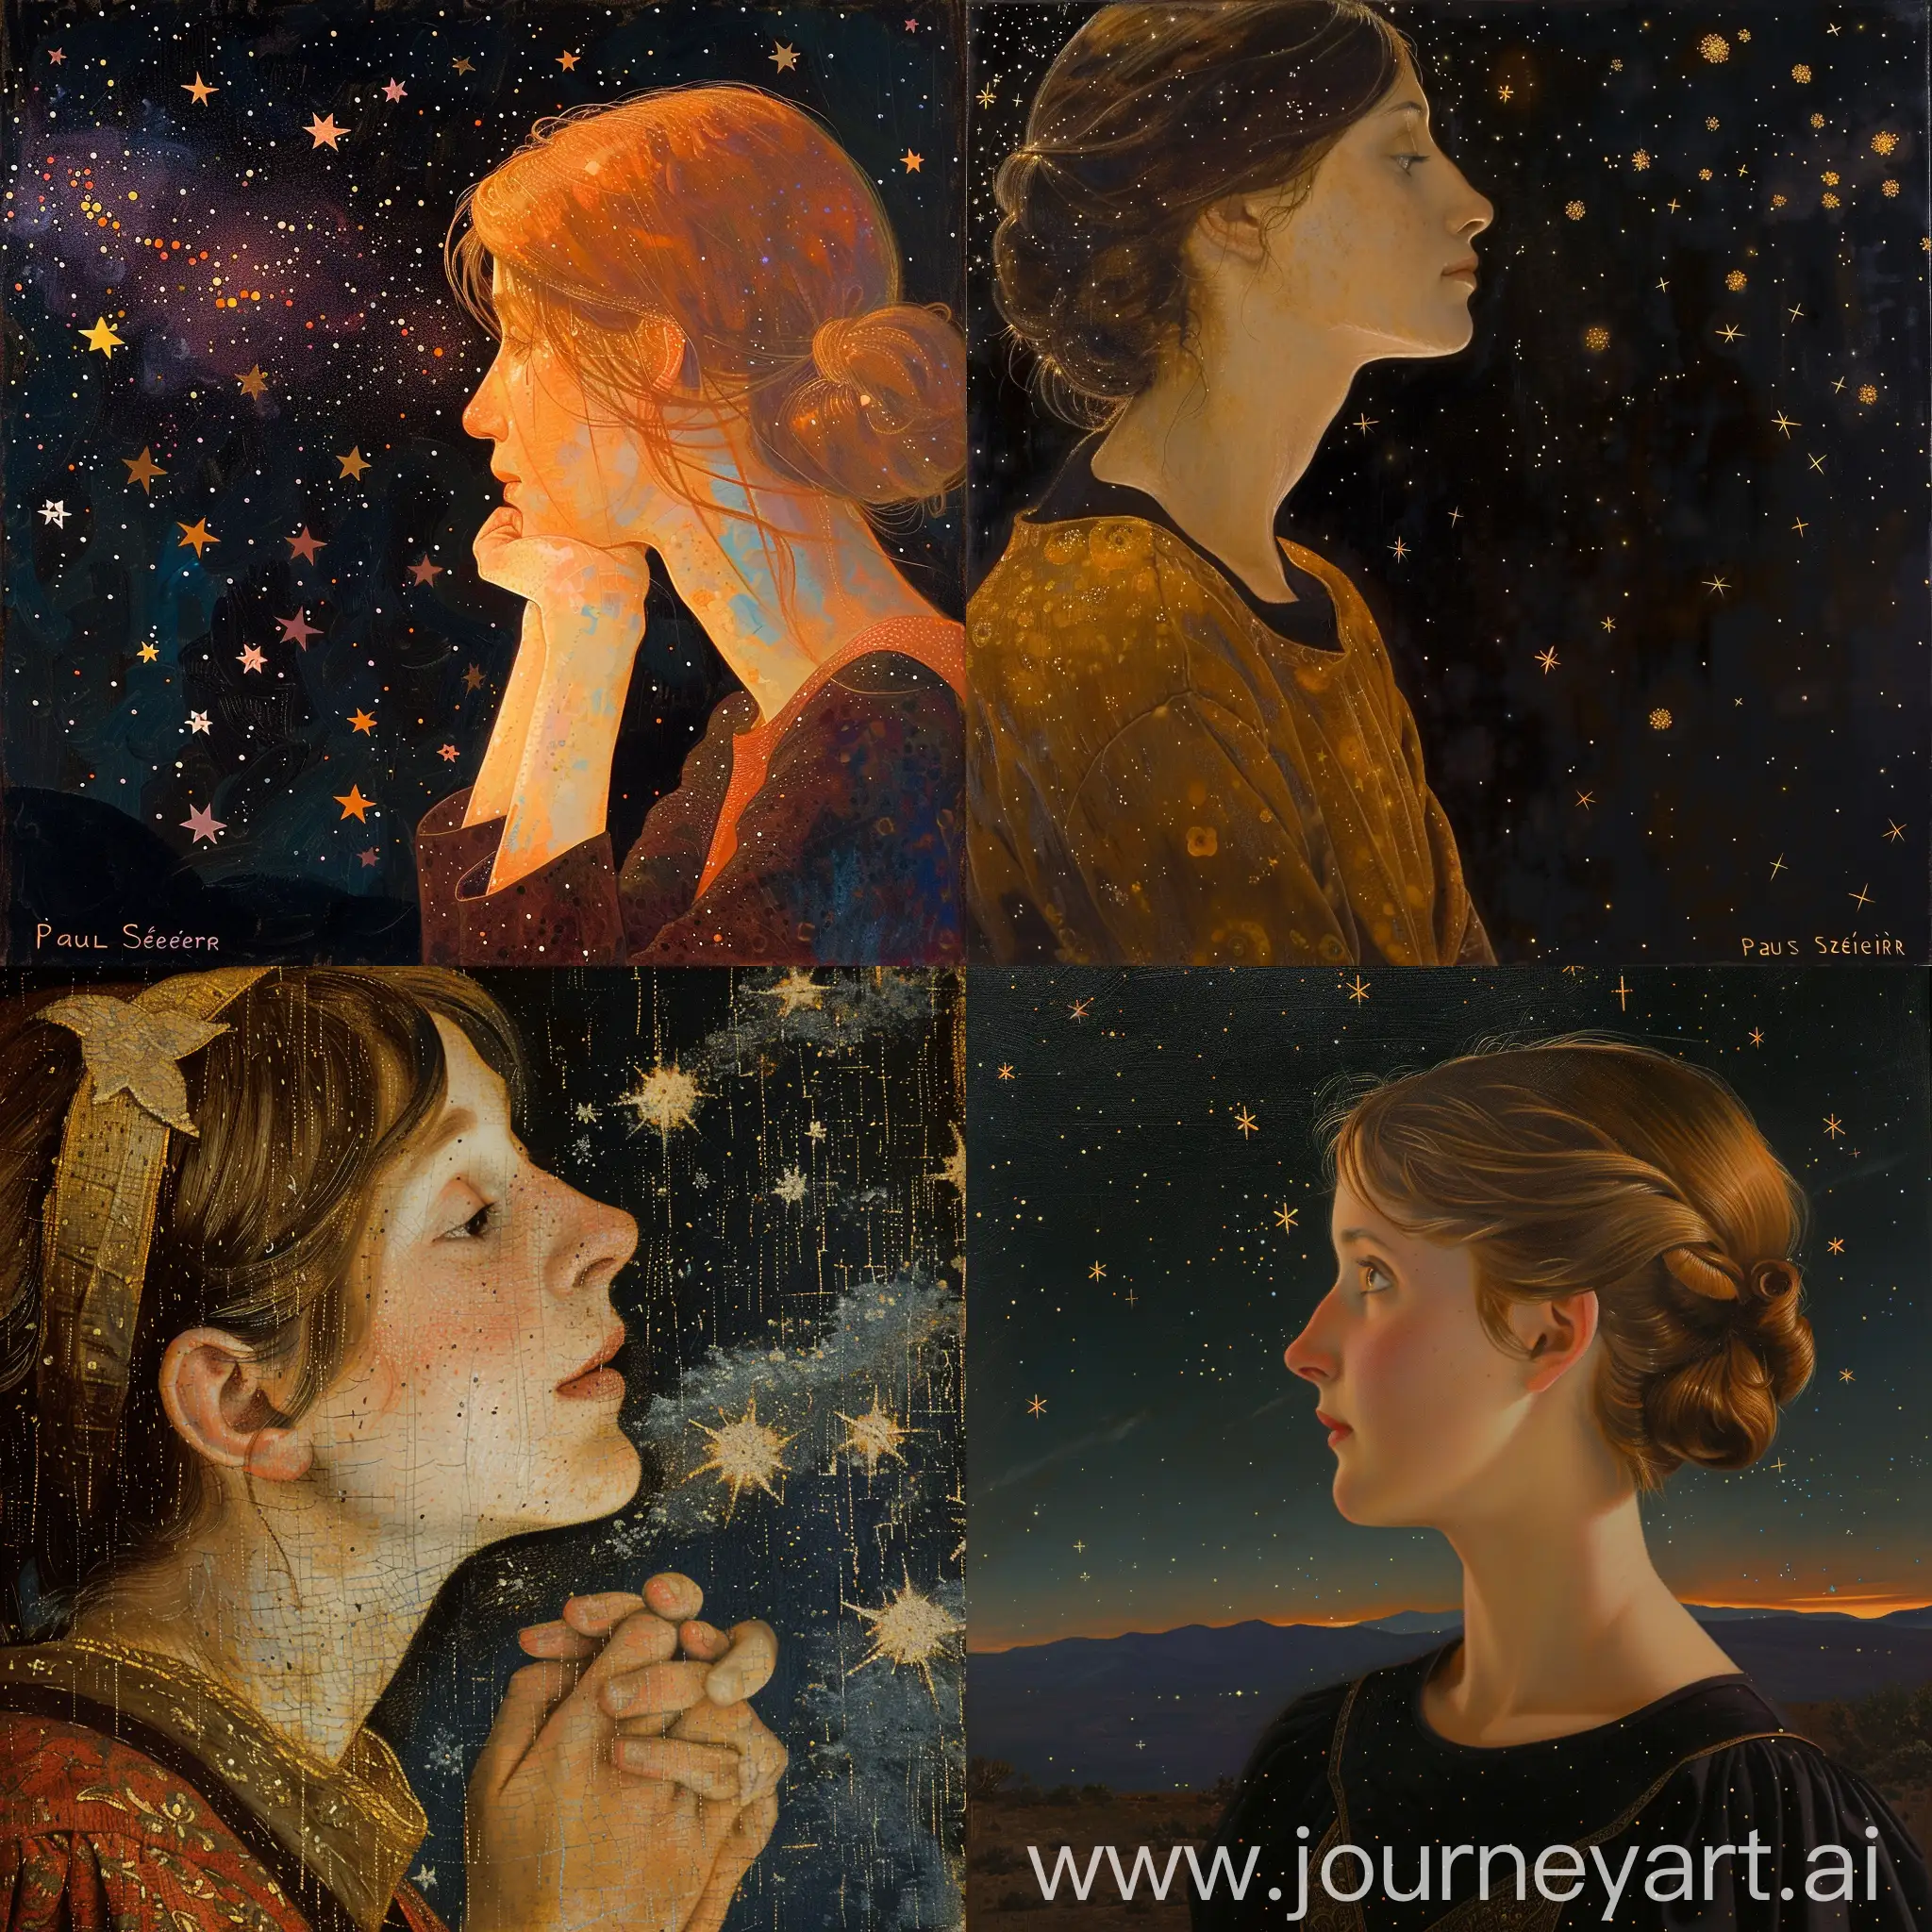 génère la peinture d'une jeune femme regardant les étoiles dans le style de Paul Sérusier, le format de l'image doit être vertical